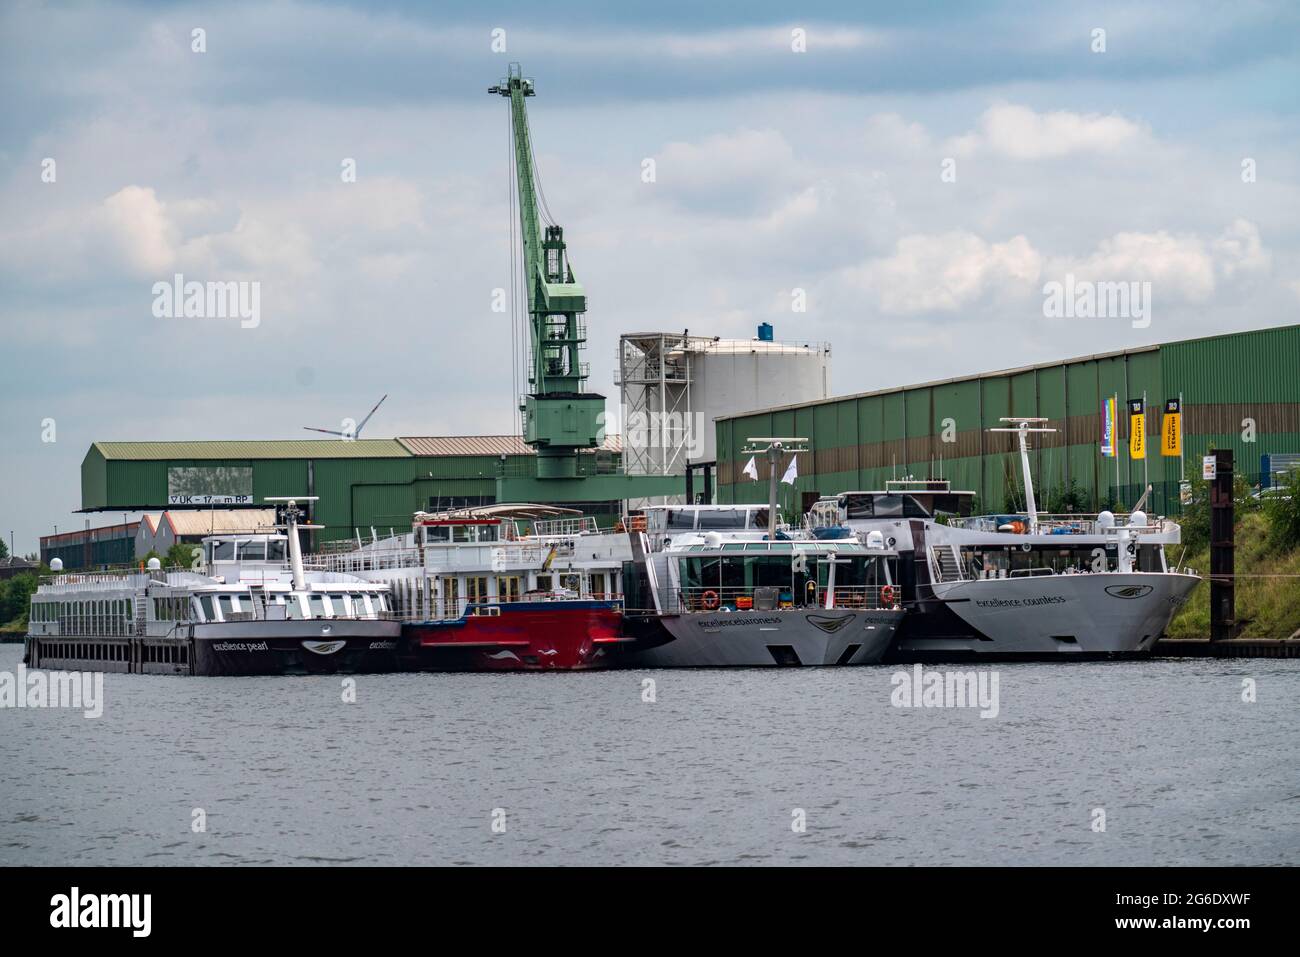 Port intérieur Duisburg Ruhrort, bassin portuaire C, les bateaux de croisière fluviaux sont à l'ancre en raison de voyages annulés dans la crise de Corona, NRW, Allemagne, Banque D'Images